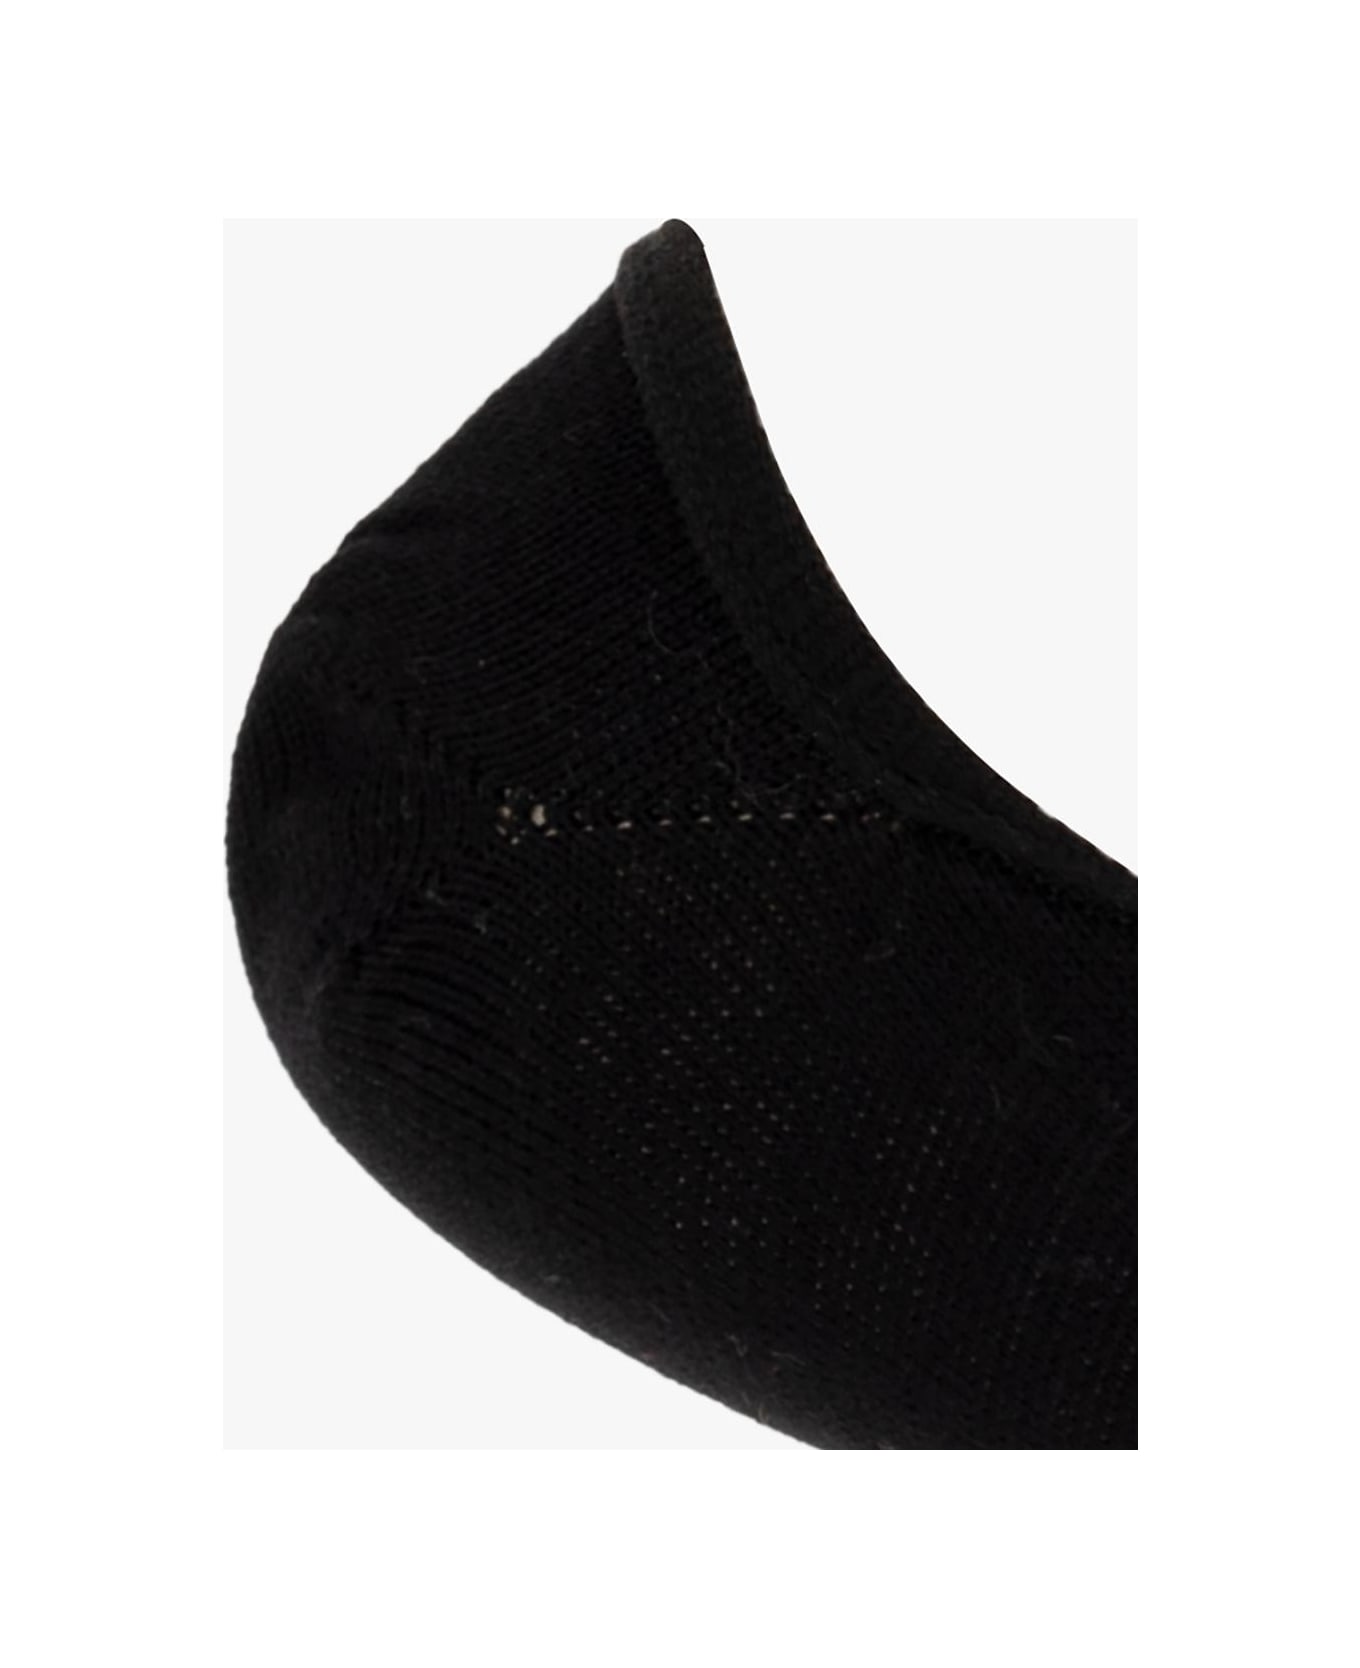 Paul Smith Striped Socks - Black